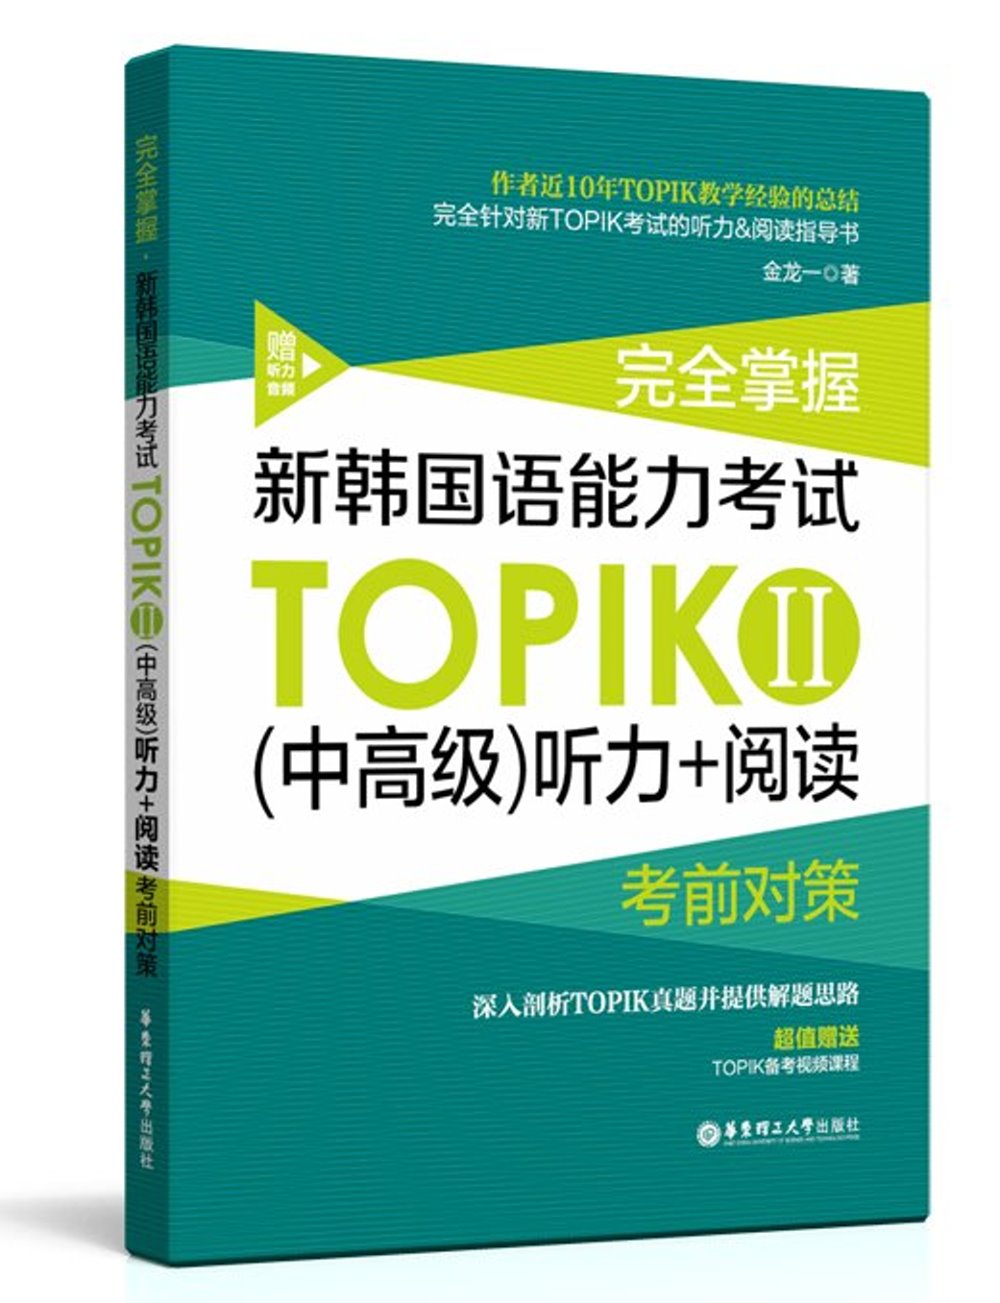 完全掌握新韓國語能力考試TOPIKⅡ(中高級)聽力+閱讀考前對策